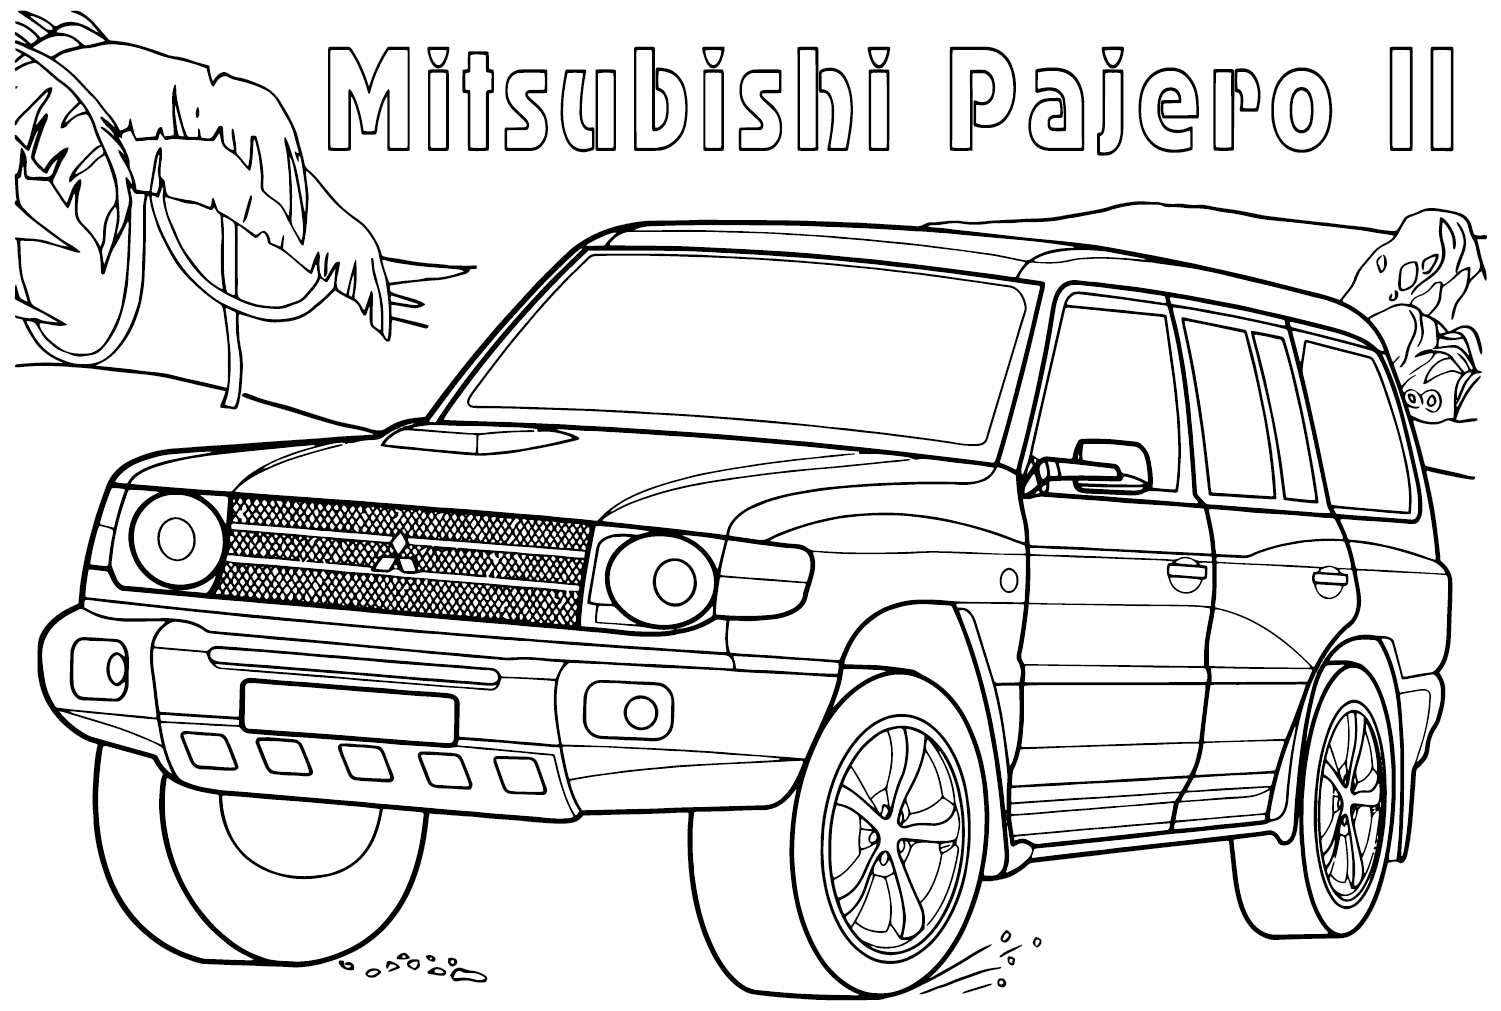 Mitsubishi Pajero II Coloring Page from Mitsubishi Motors